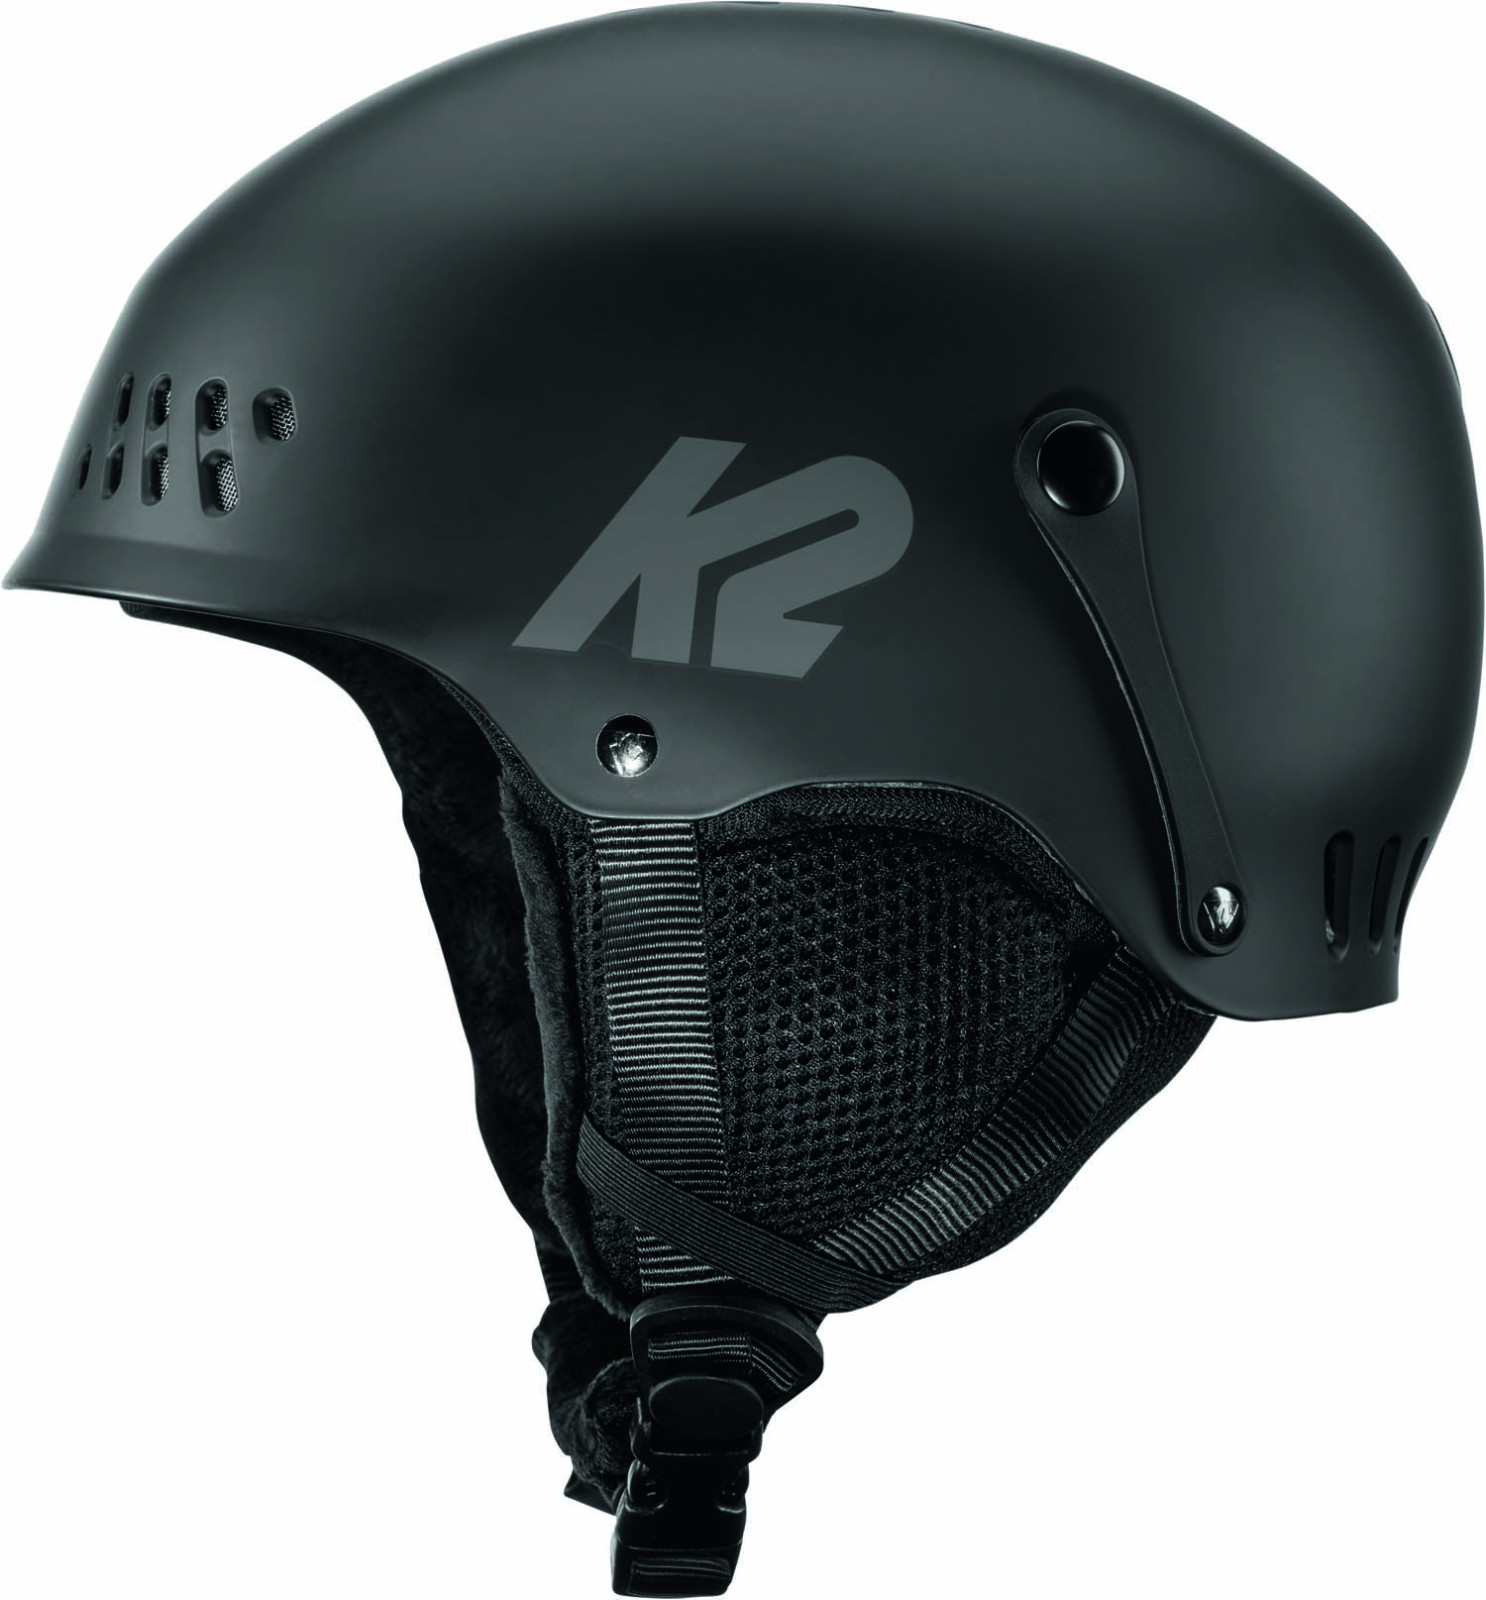 juniorská lyžařská helma K2 Entity